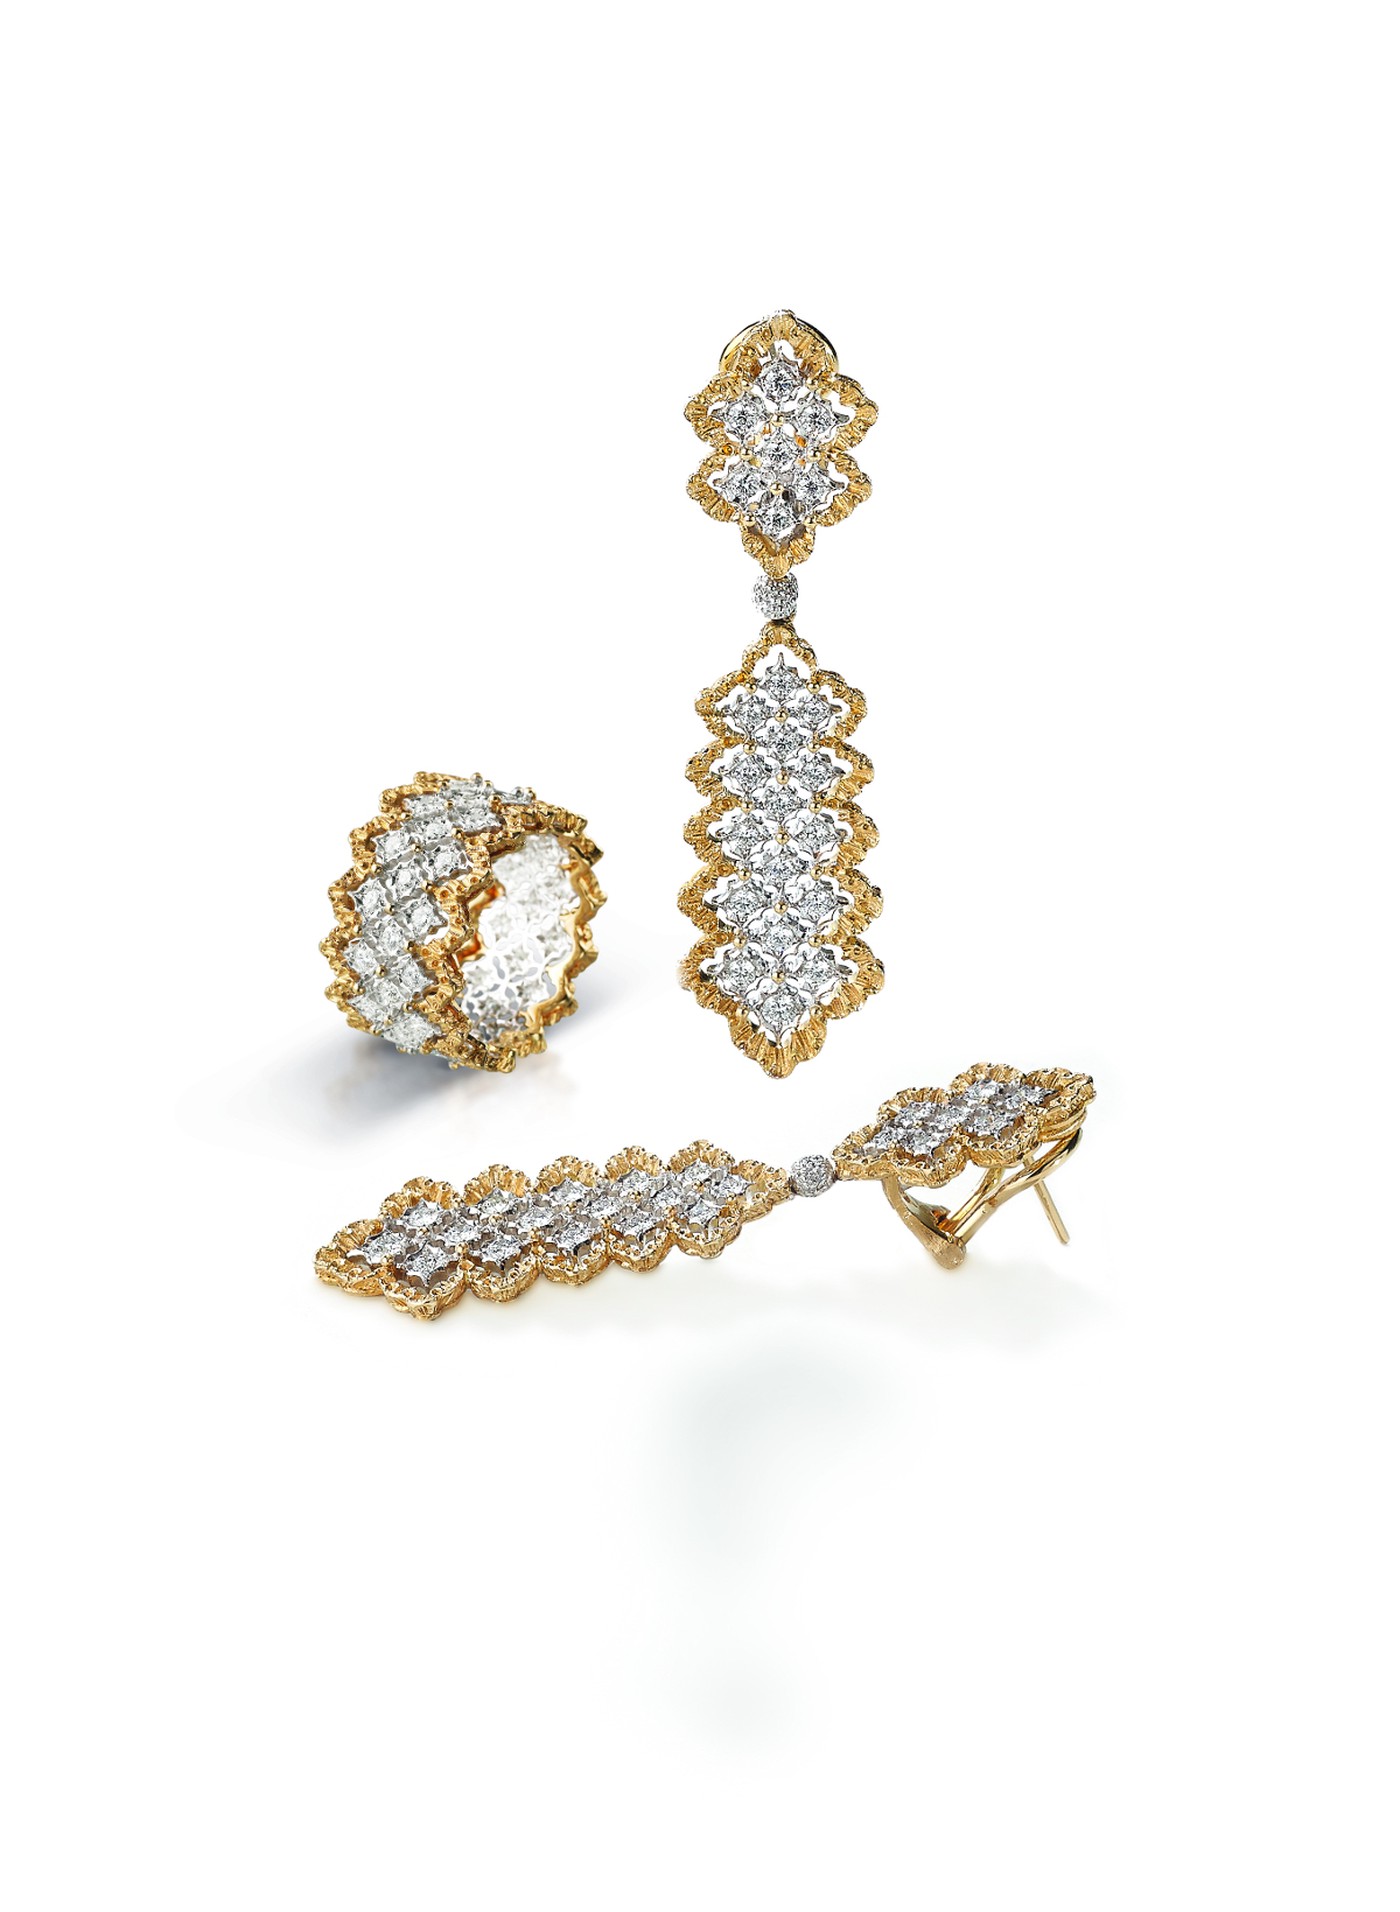 Rombi Hanger oorbellen en bijpassende ring in witgoud bezet met diamanten, met geschulpte geelgouden randen